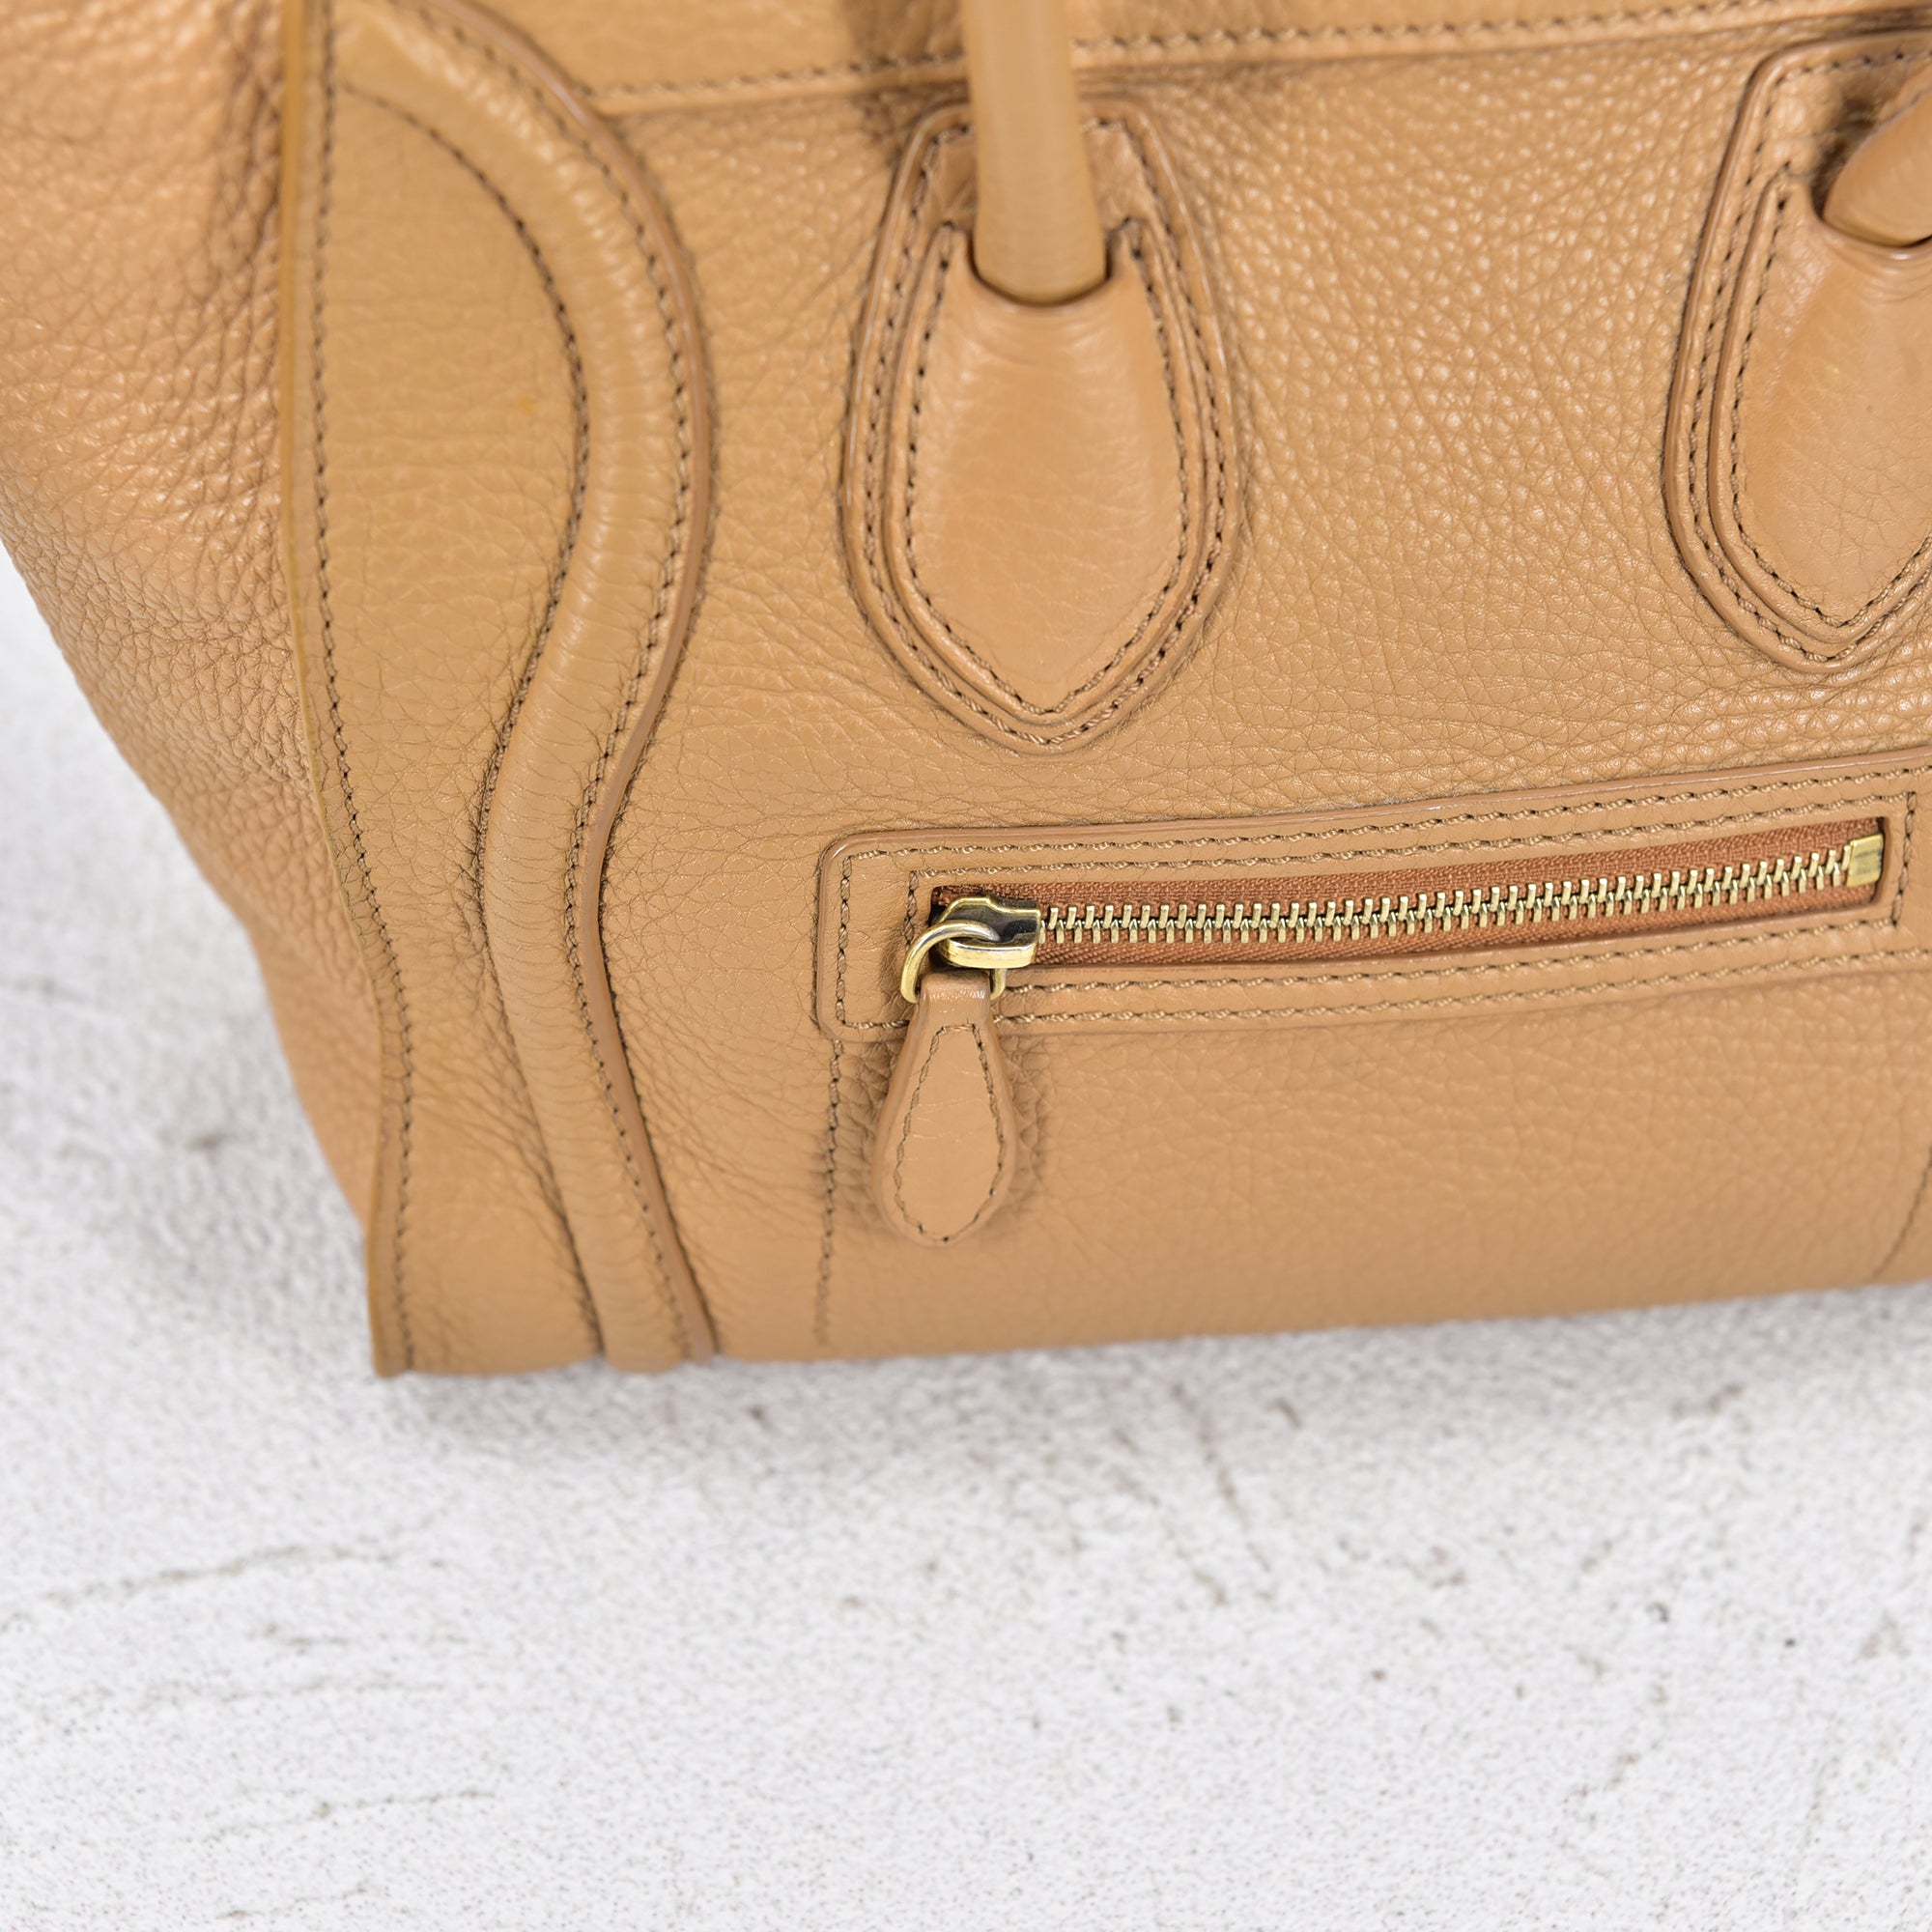 Uretfærdighed andrageren kompakt Celine læder bagage total taske kalveskind beige - SPLISH